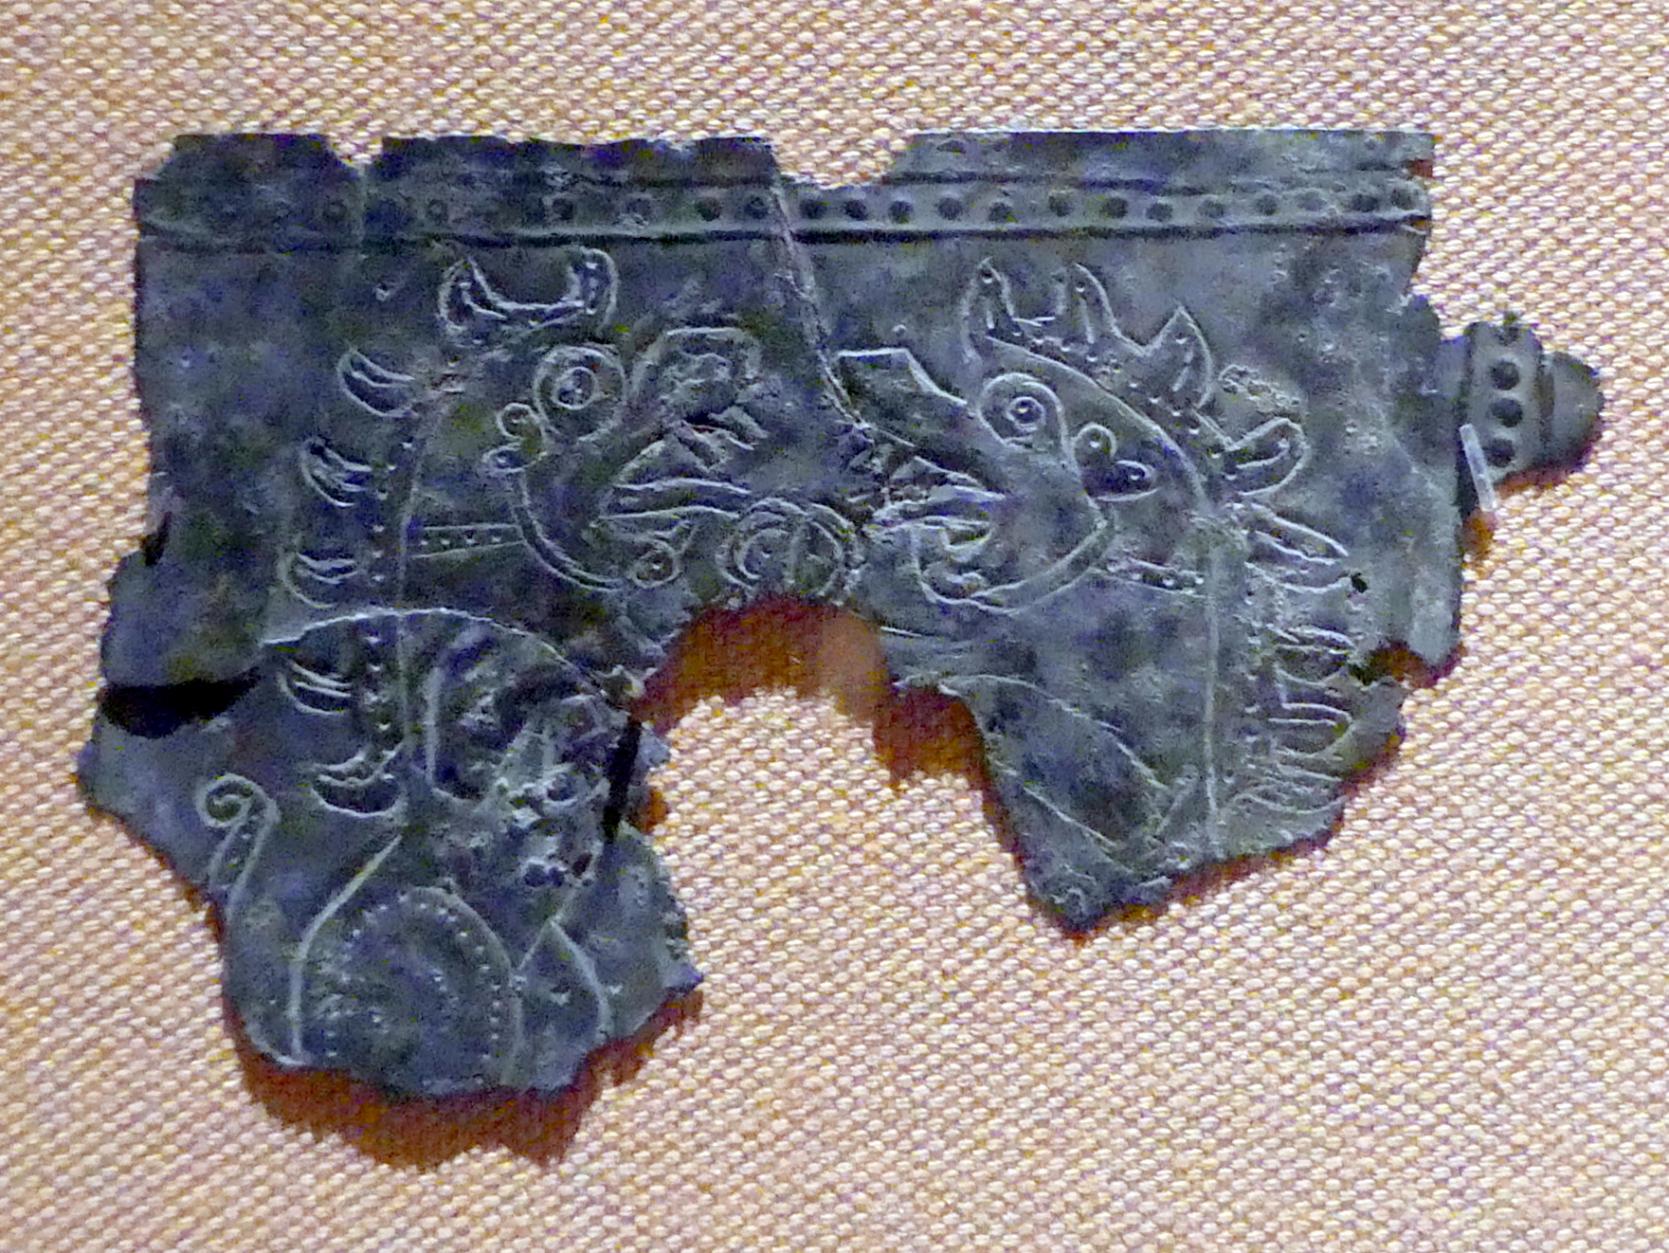 Plakettenfragmente mit fantastischen Kreaturen, Eisenzeit III, 800 - 600 v. Chr., 800 - 600 v. Chr., Bild 1/2